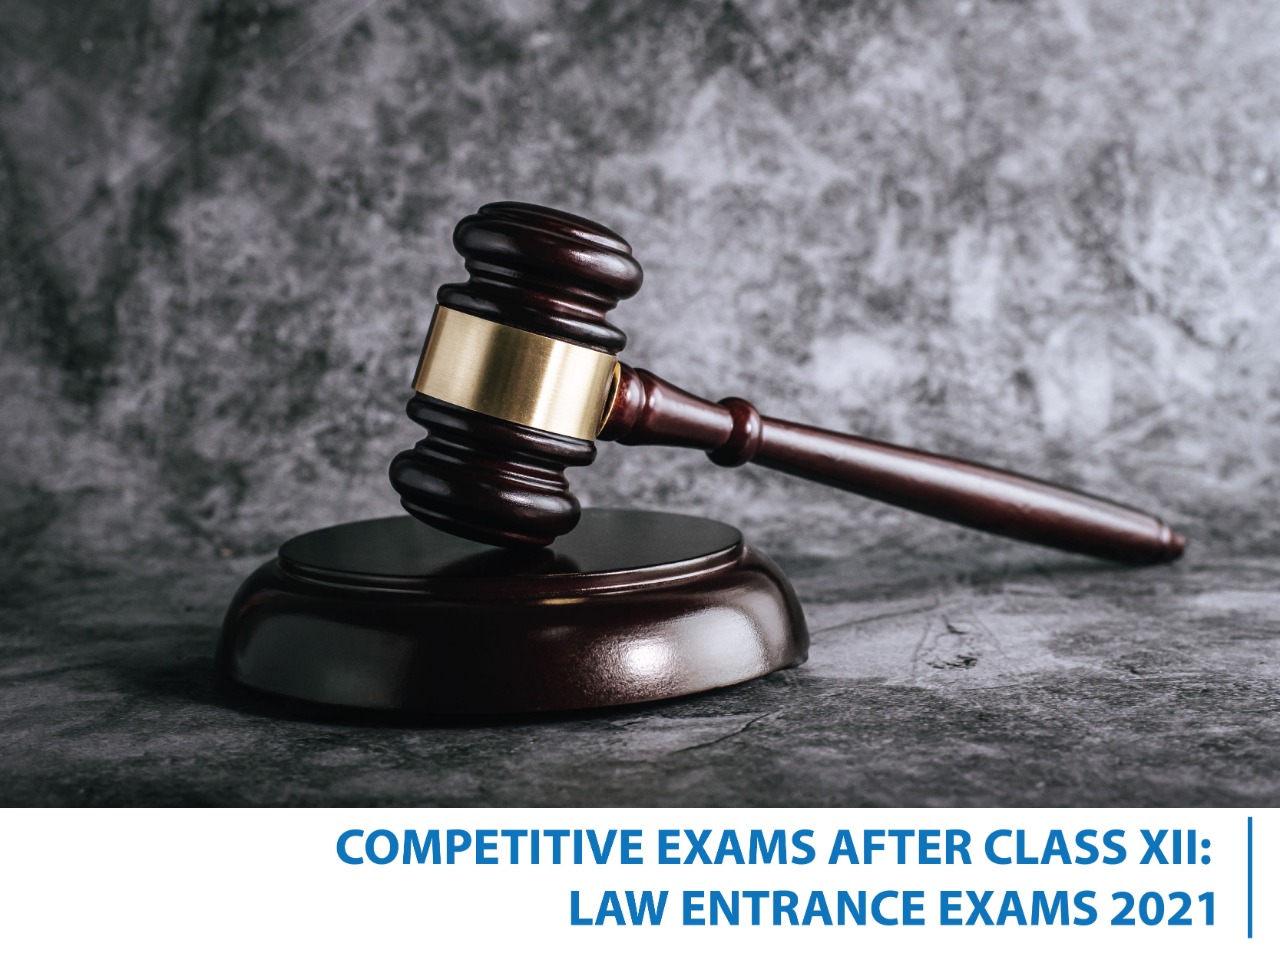 Law entrance exams 2021